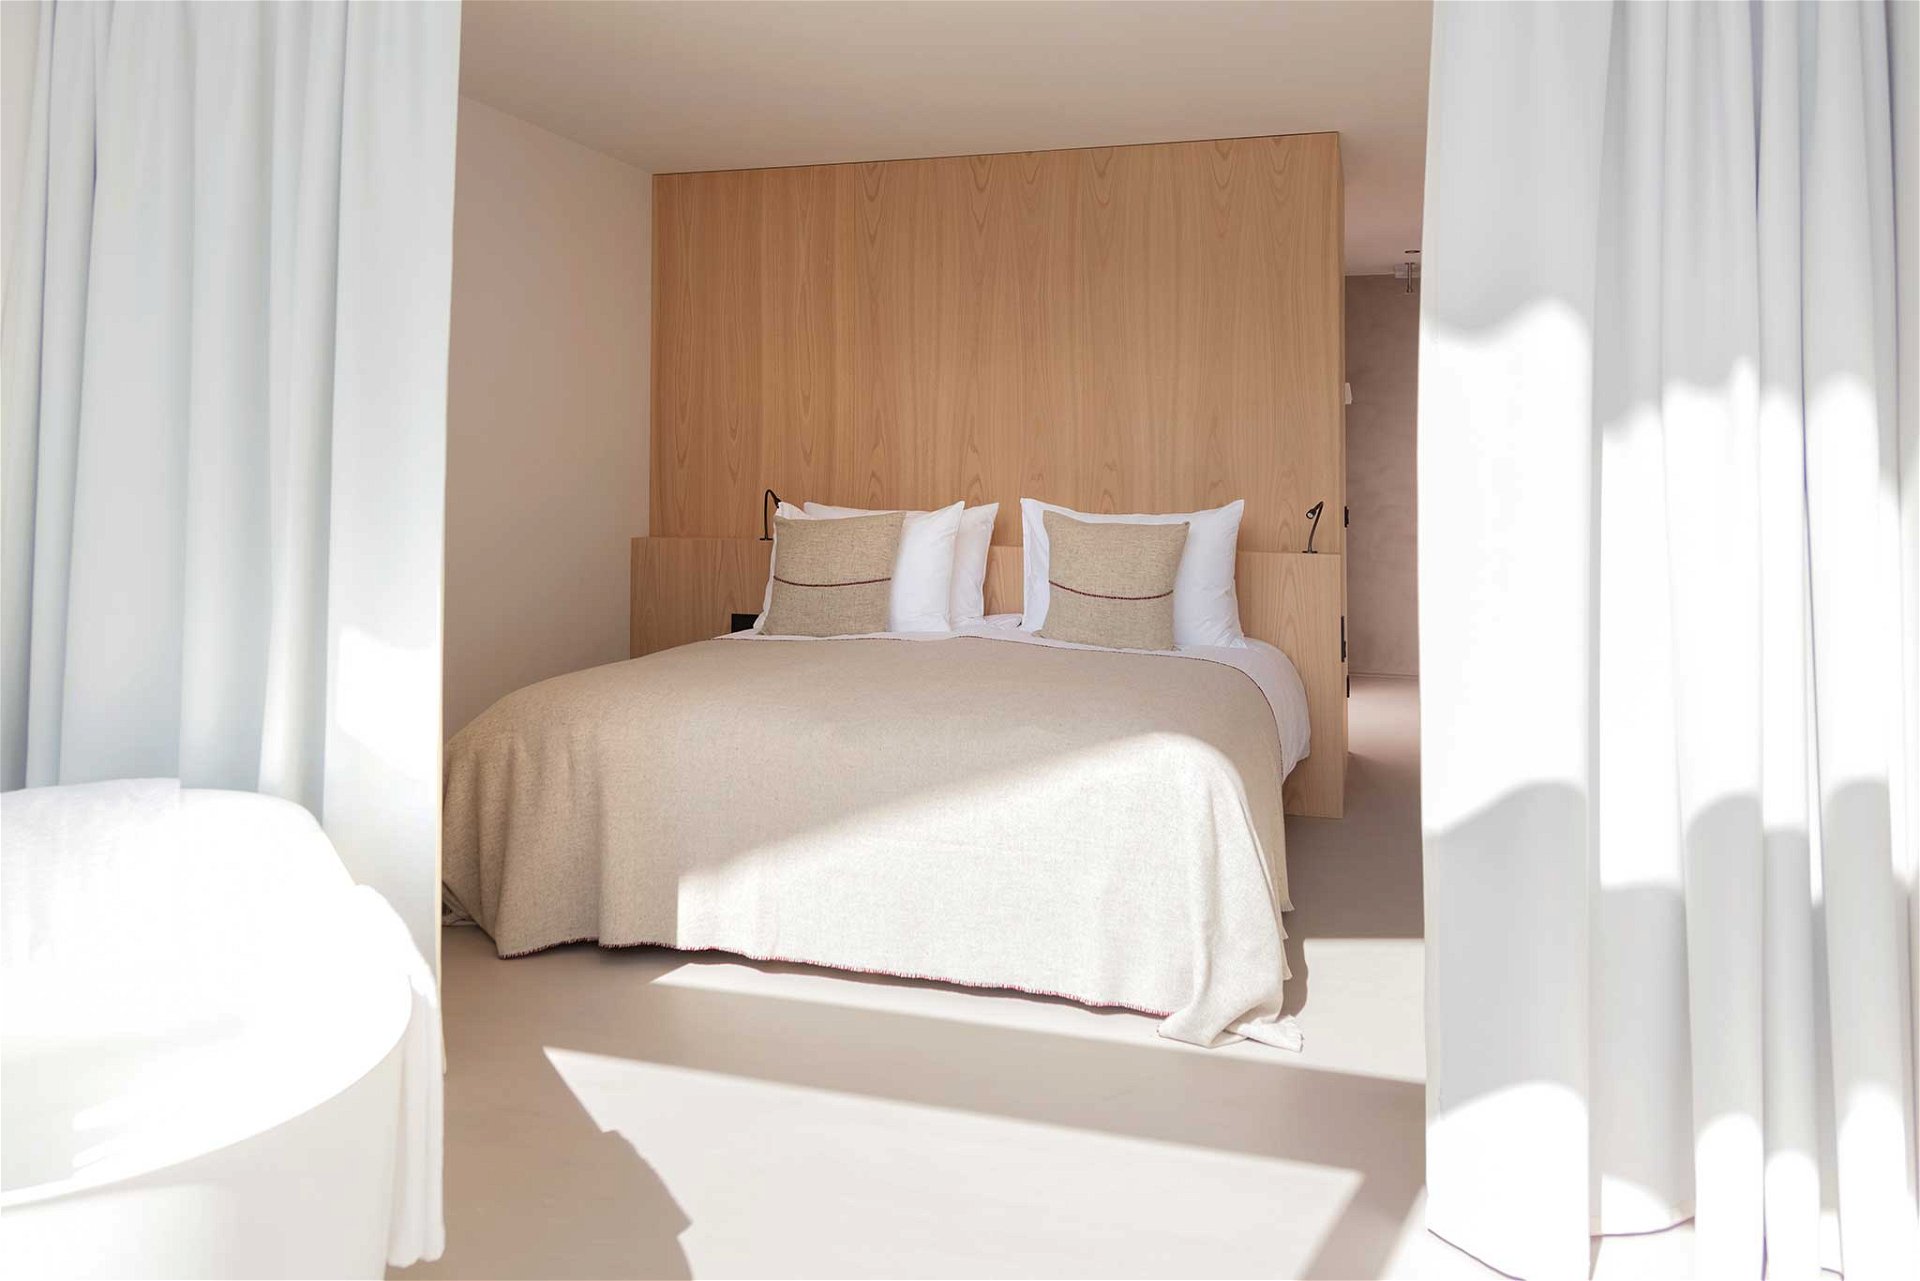 Design In allen 42 Design-Zimmern stehen ein maßgefertigtes Bett aus Kastanienholz und eine weiße Badewanne im Fokus – dennoch gleicht kein Raum dem anderen. Doppelzimmer ab 228 Euro pro Nacht. 